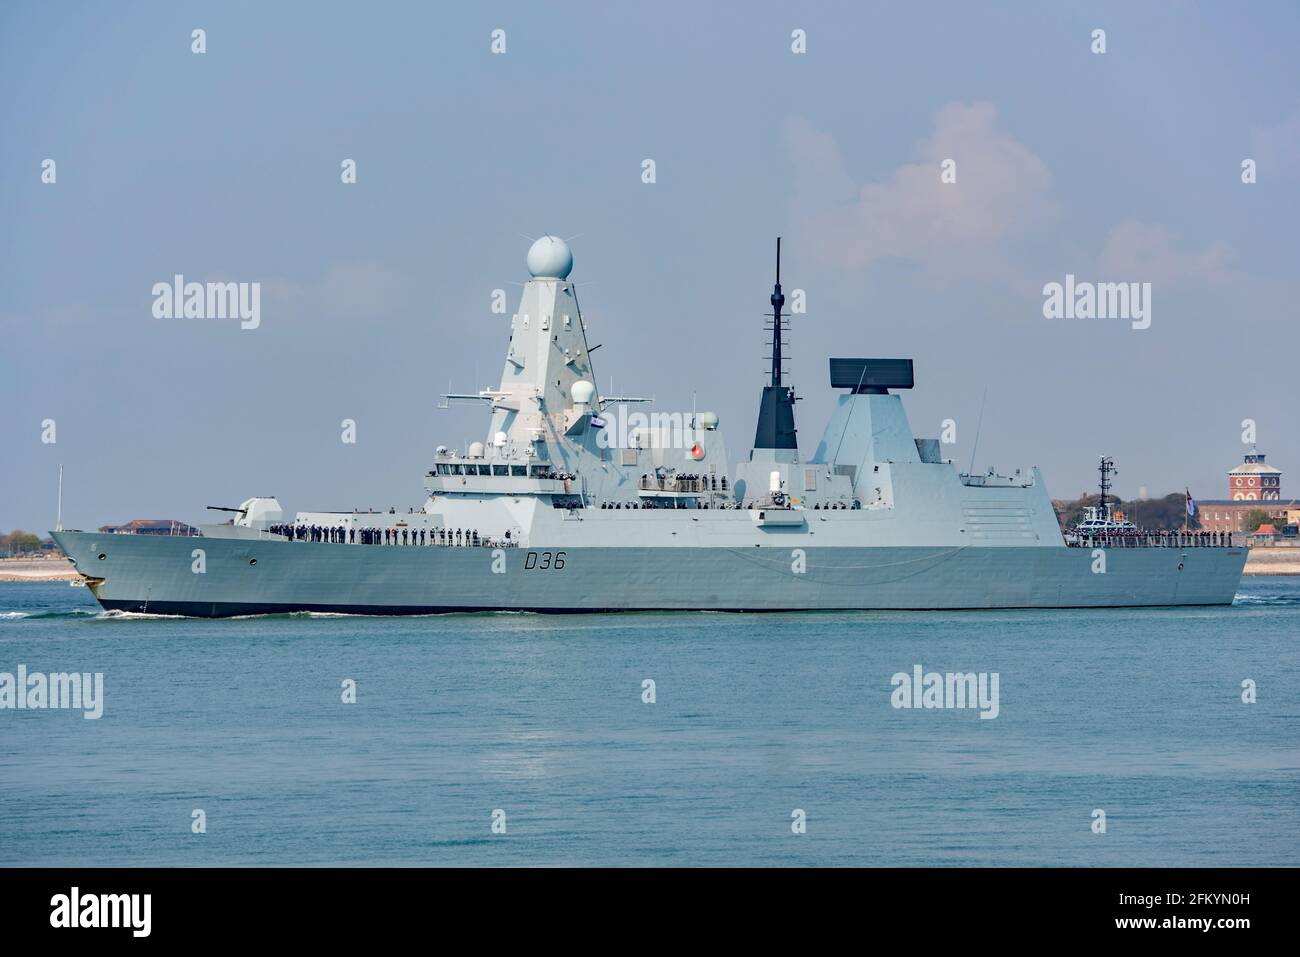 Le destructeur HMS Defender de type 45 de la Royal Navy a quitté Portsmouth (Royaume-Uni) le 1/5/2021 dans le cadre du Carrier Strike Group du Royaume-Uni déployé dans l'Indo-Pacifique. Banque D'Images